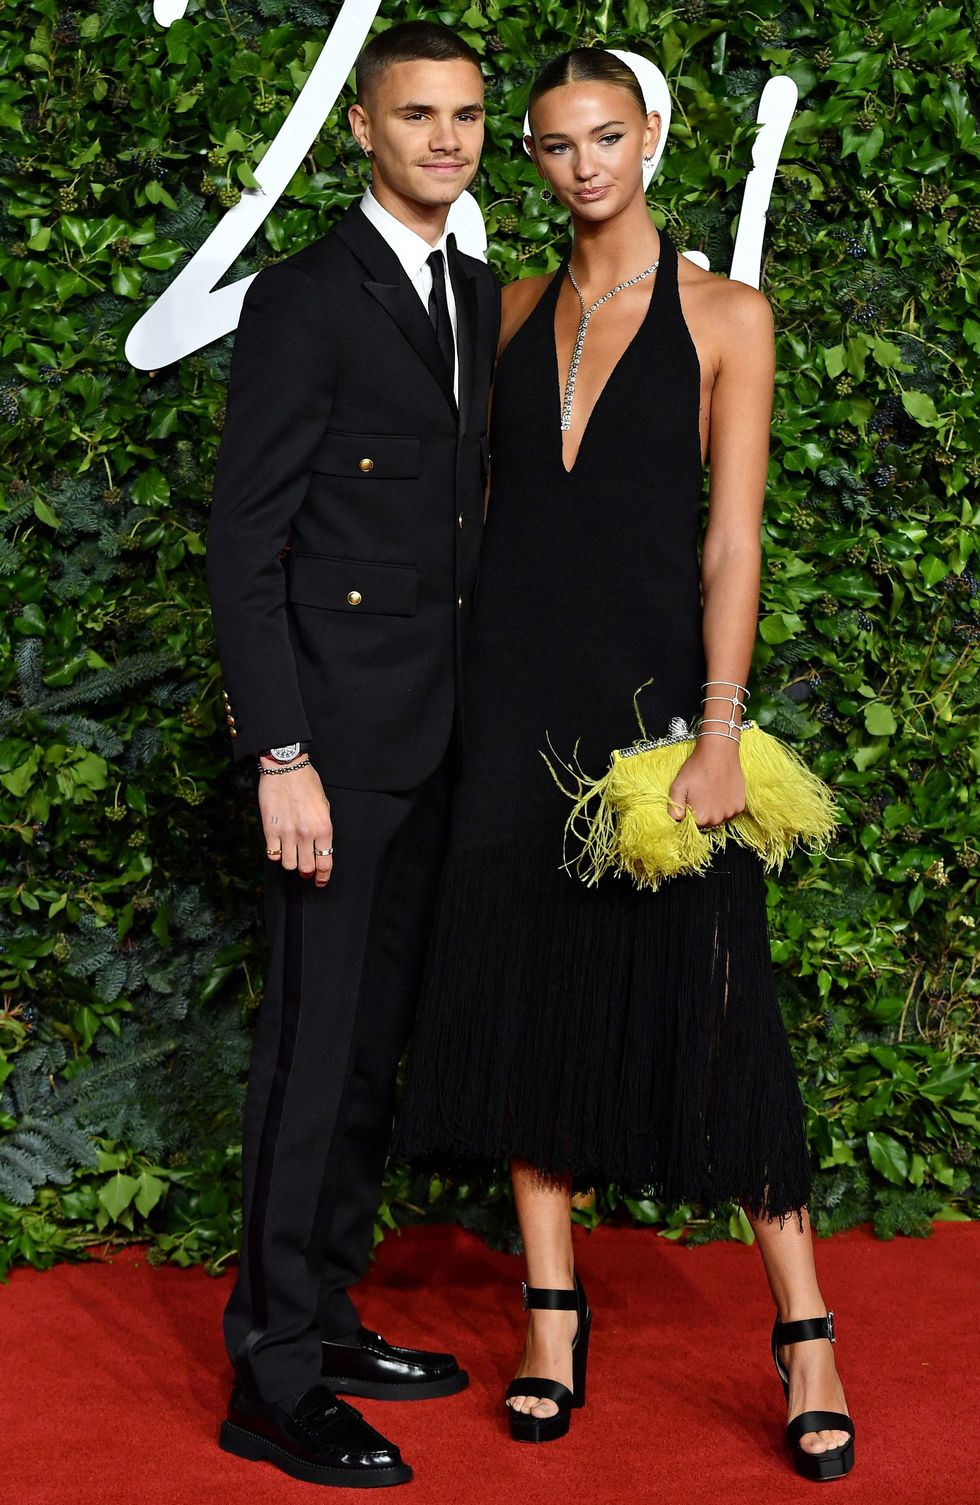 Romeo Beckham cùng bạn gái Mia xuất hiện tại sự kiện với thời trang đồng điệu, hướng đến sự trưởng thành và thanh lịch.